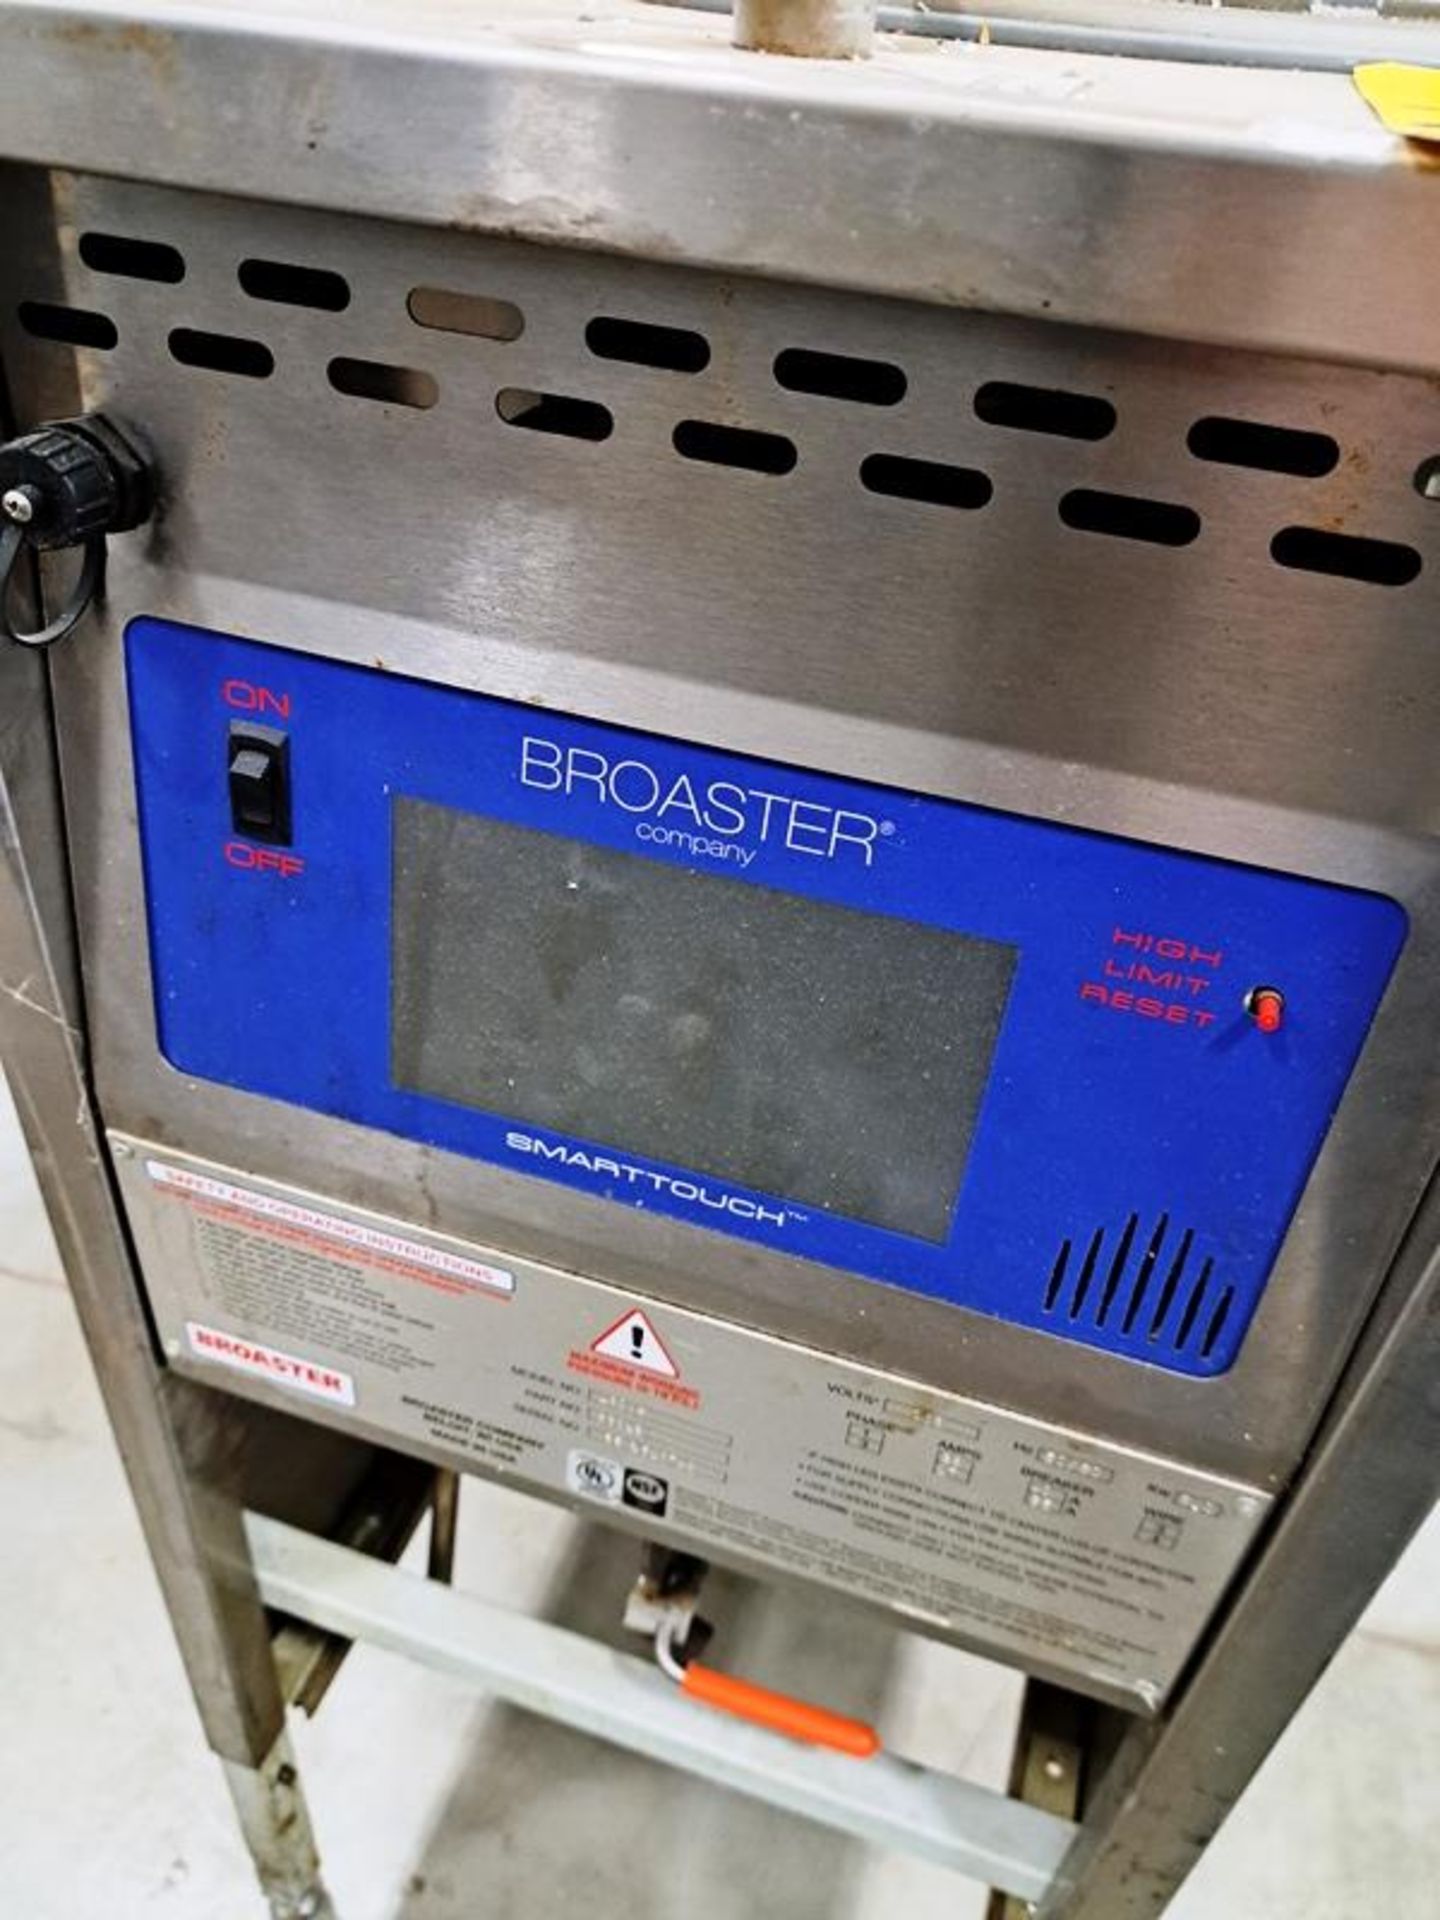 Broaster Co. Mdl. 1600ST Deep Fryer, Ser. #SE6J51074B, 208 volts, 1/3 phase - Image 3 of 5